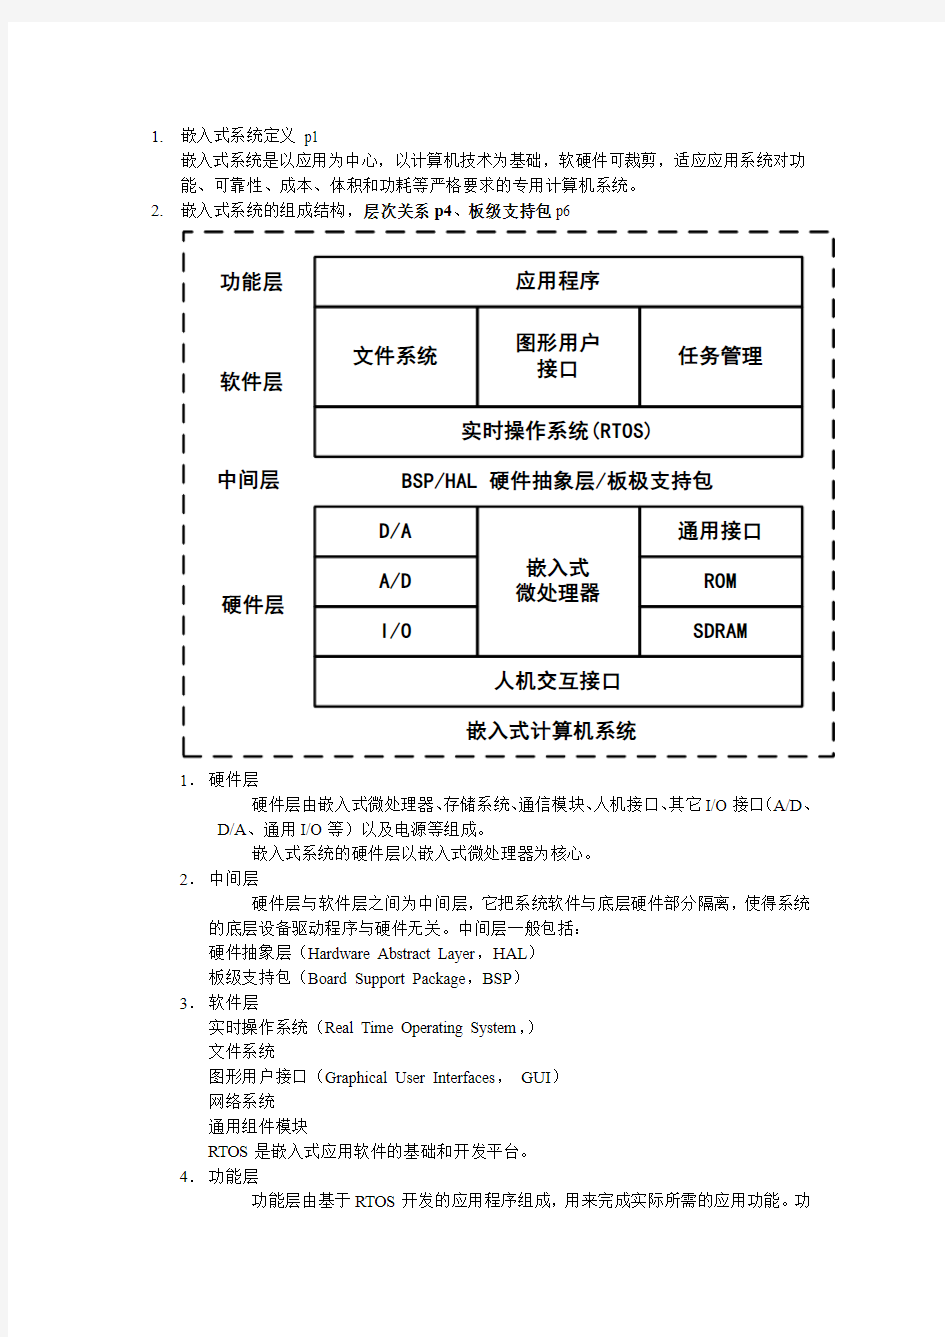 嵌入式系统复习 南京邮电大学 期末复习 答案 提纲